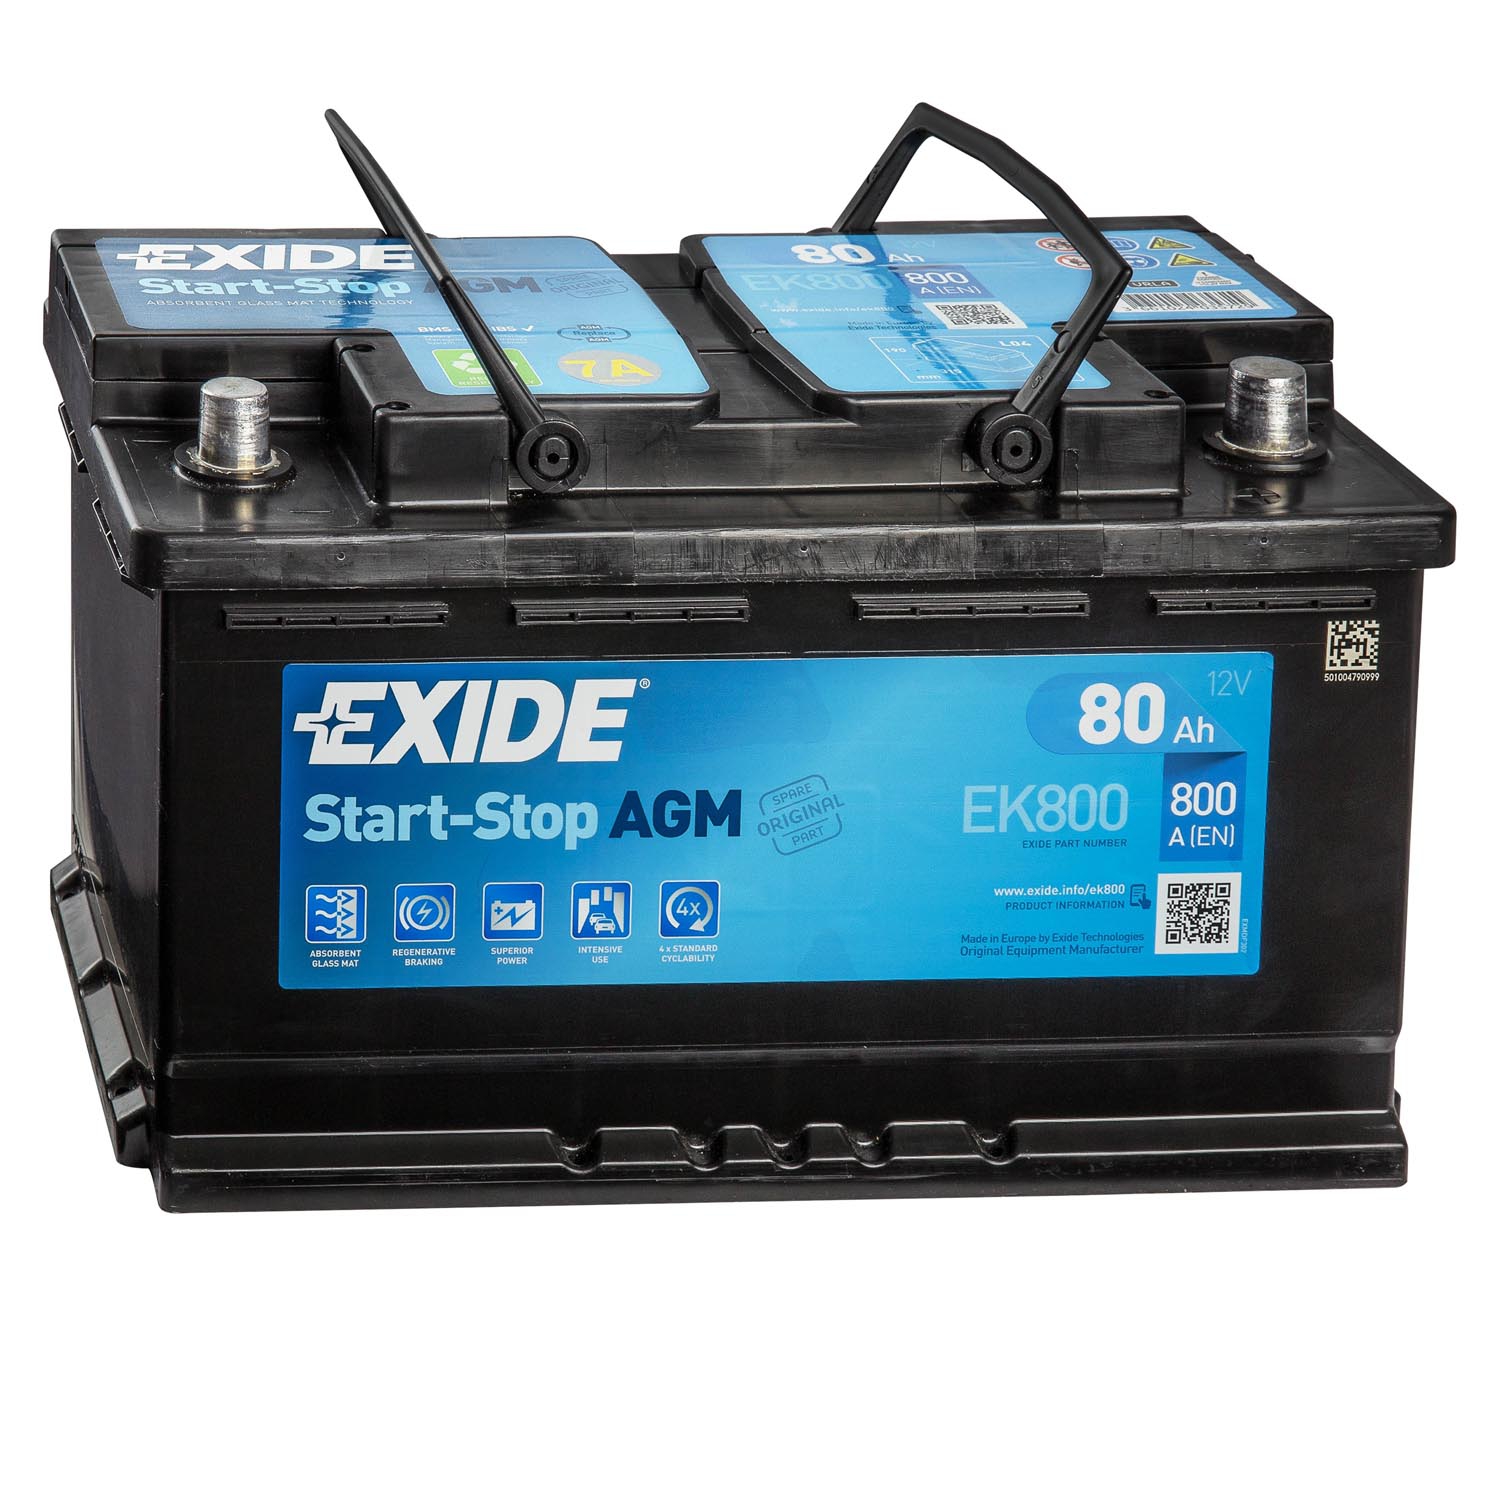 træ Den fremmede svovl Exide EK800 AGM Autobatterie 12V 80Ah | Batterie24.de